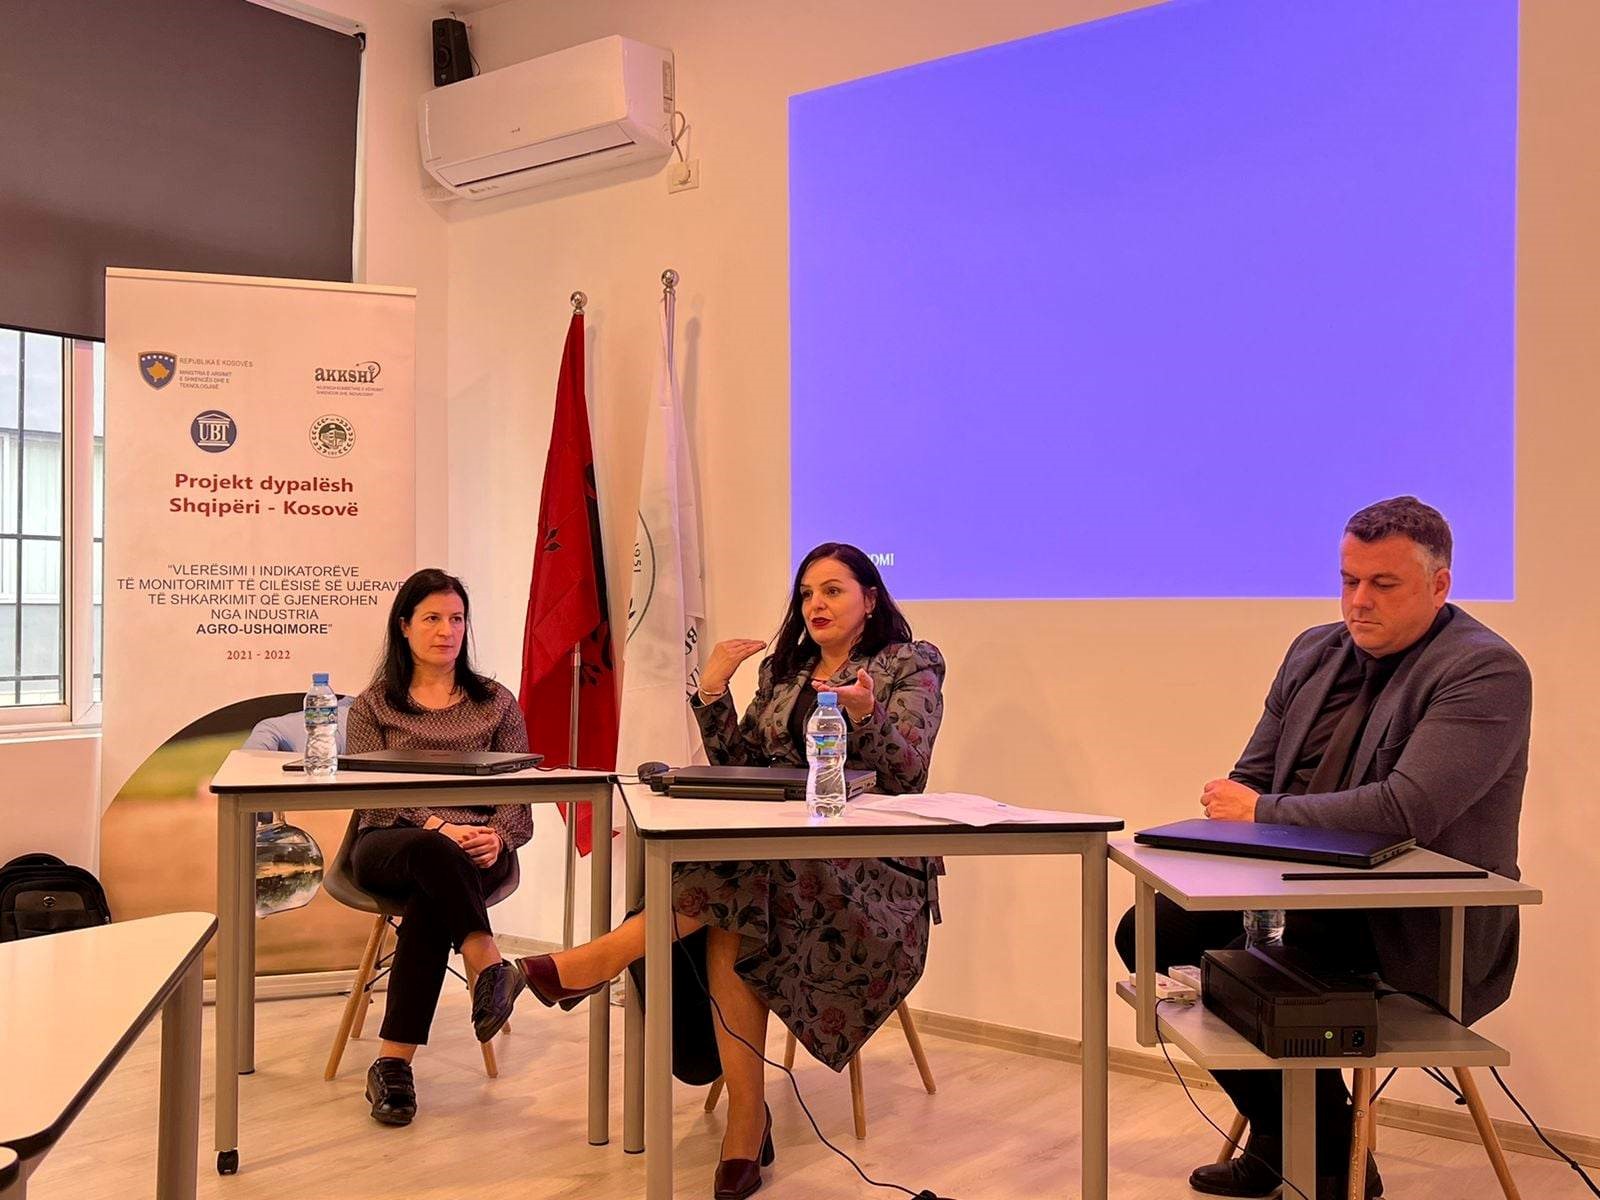 Profesorët e UBT-së morën pjesë në aktivitete dyditore në Shqipëri në kuadër të projektit dypalësh Kosovë – Shqipëri